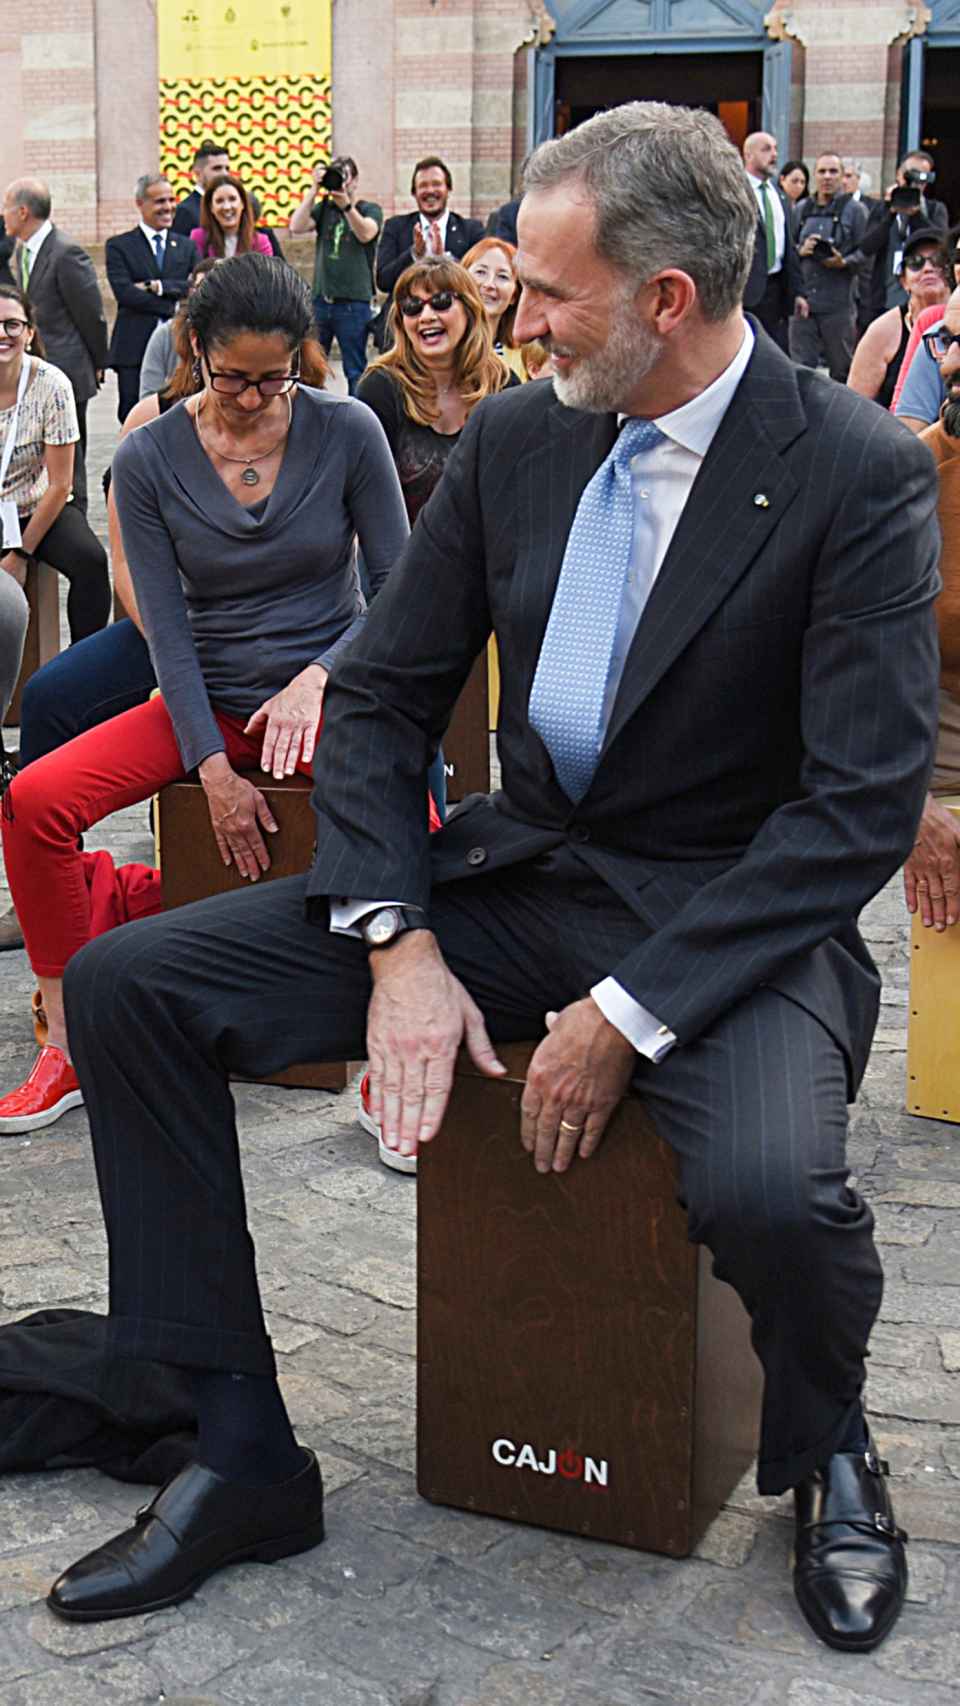 El rey Felipe VI tocando el cajón con gran pericia, este pasado lunes, en Cádiz.